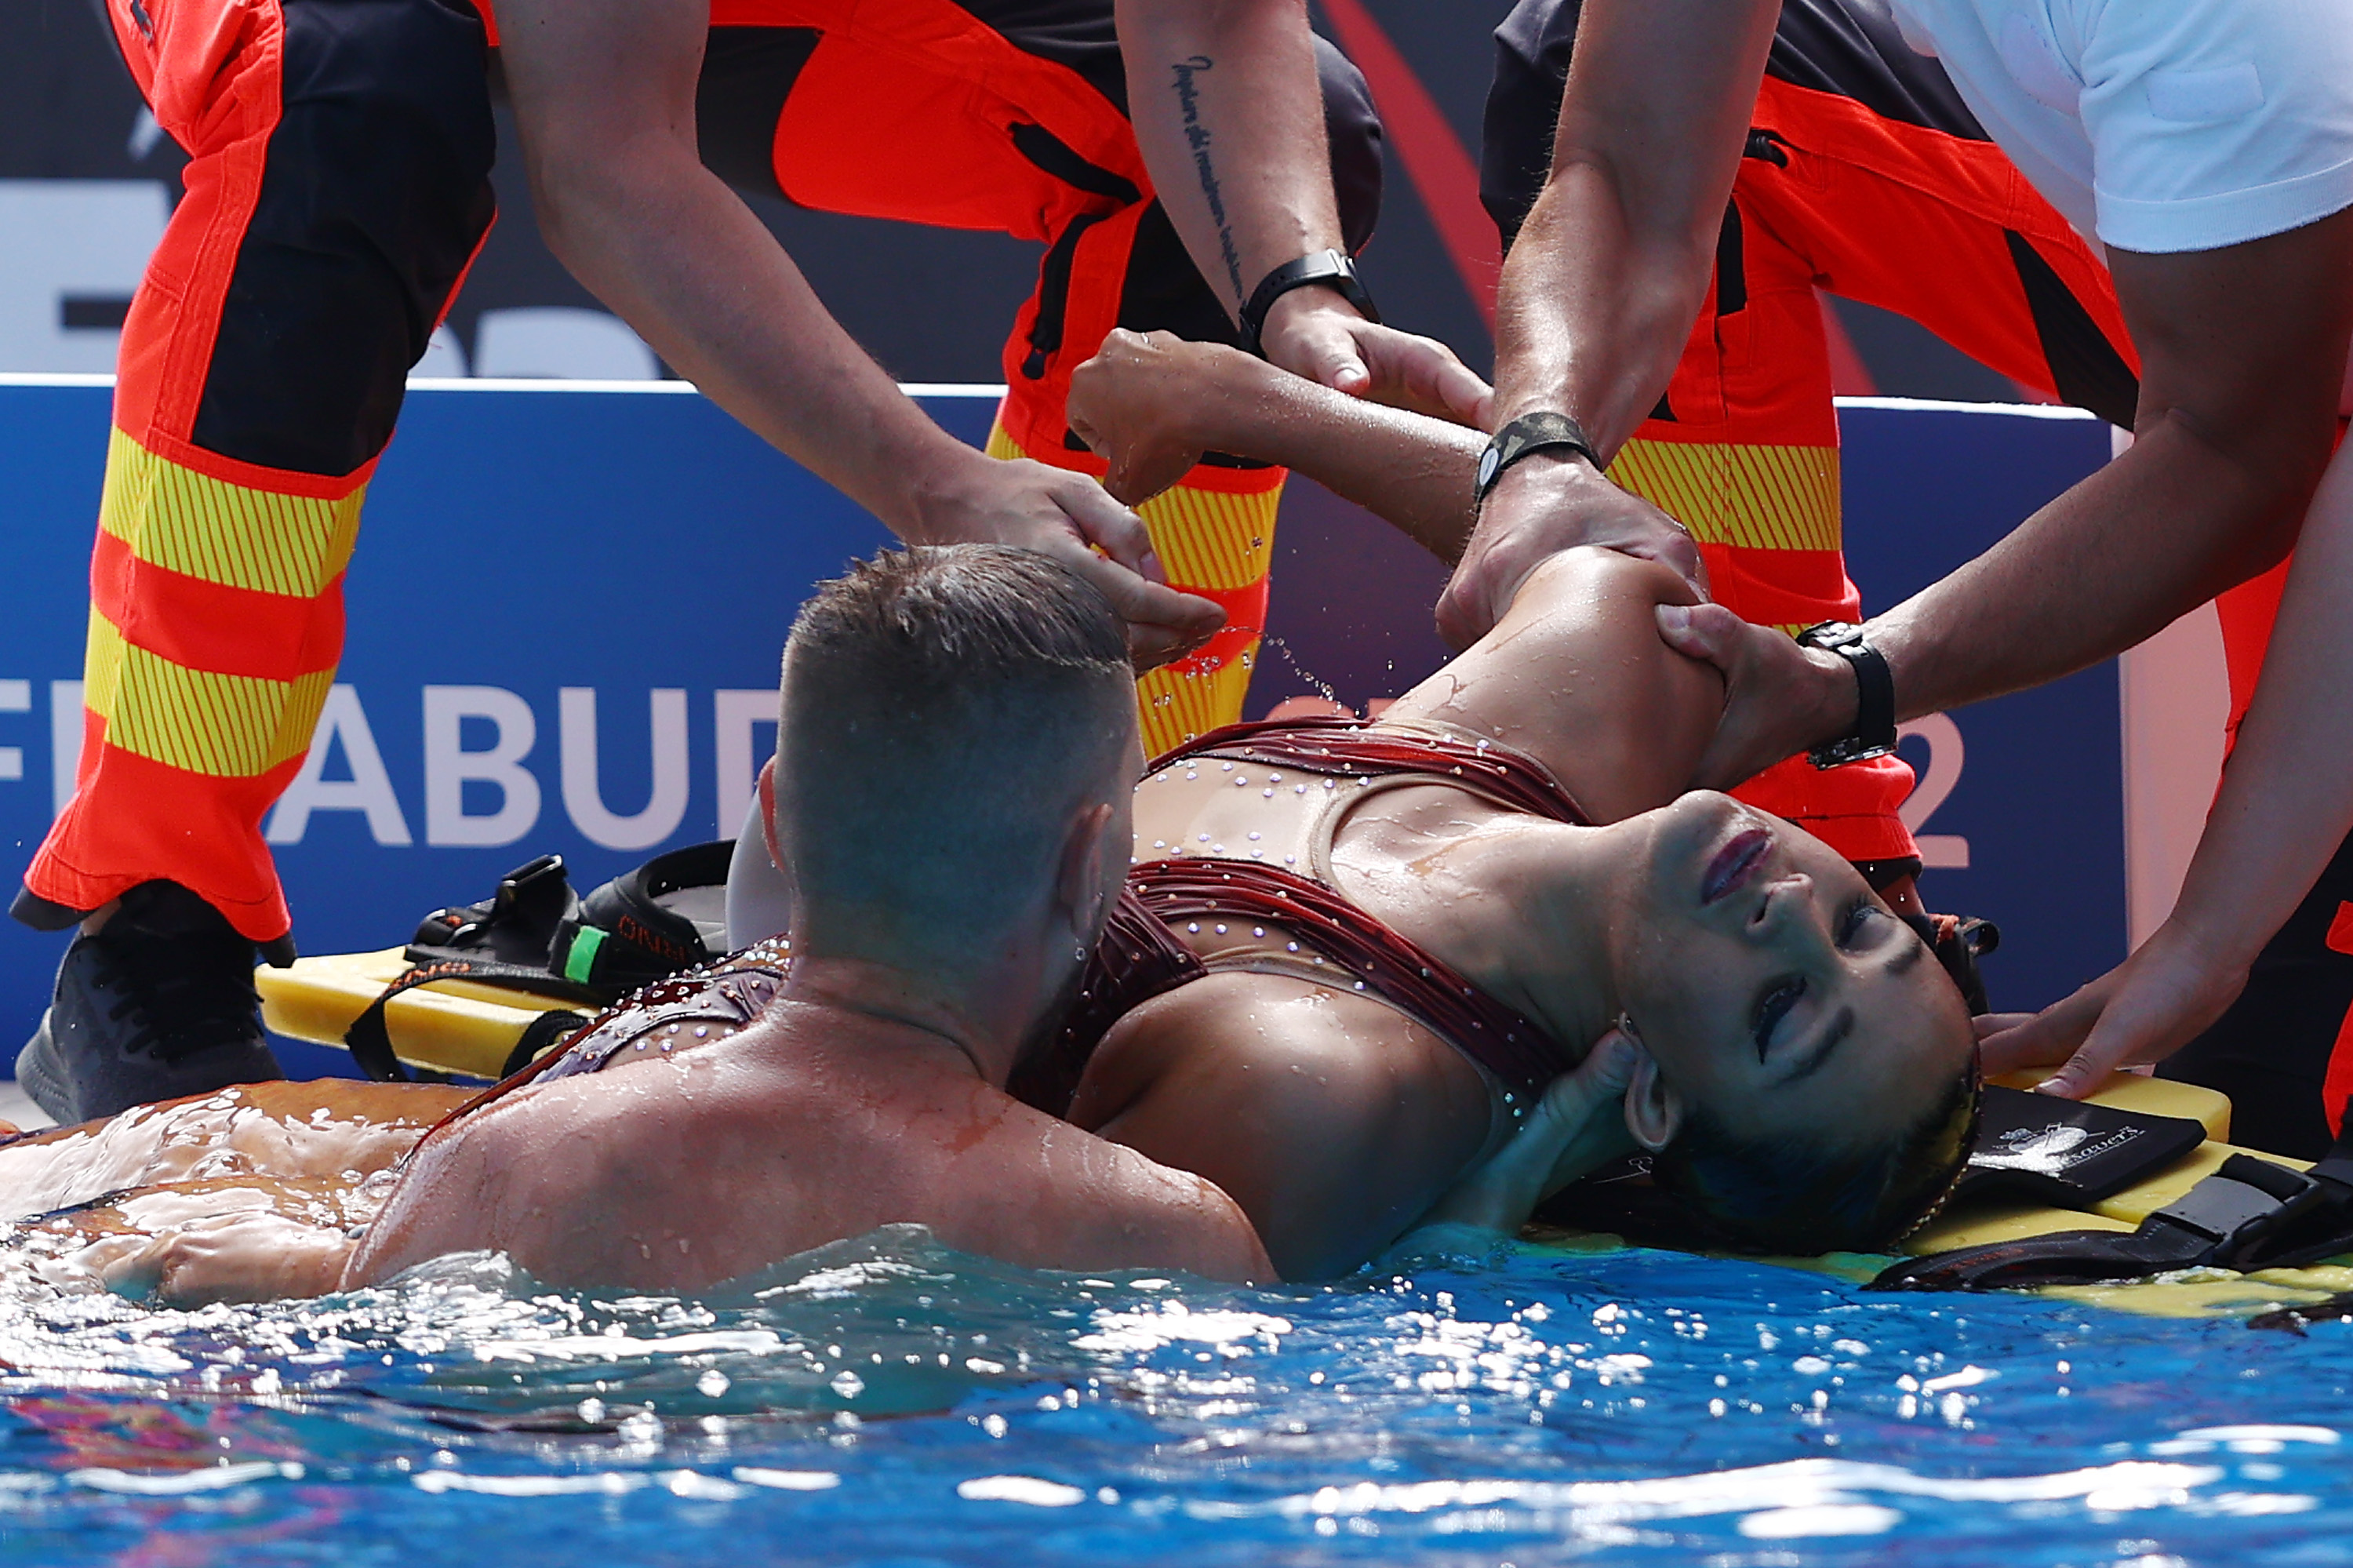 Championnats du monde de natation |  Un nageur secouru par un coach après avoir coulé au fond de la piscine